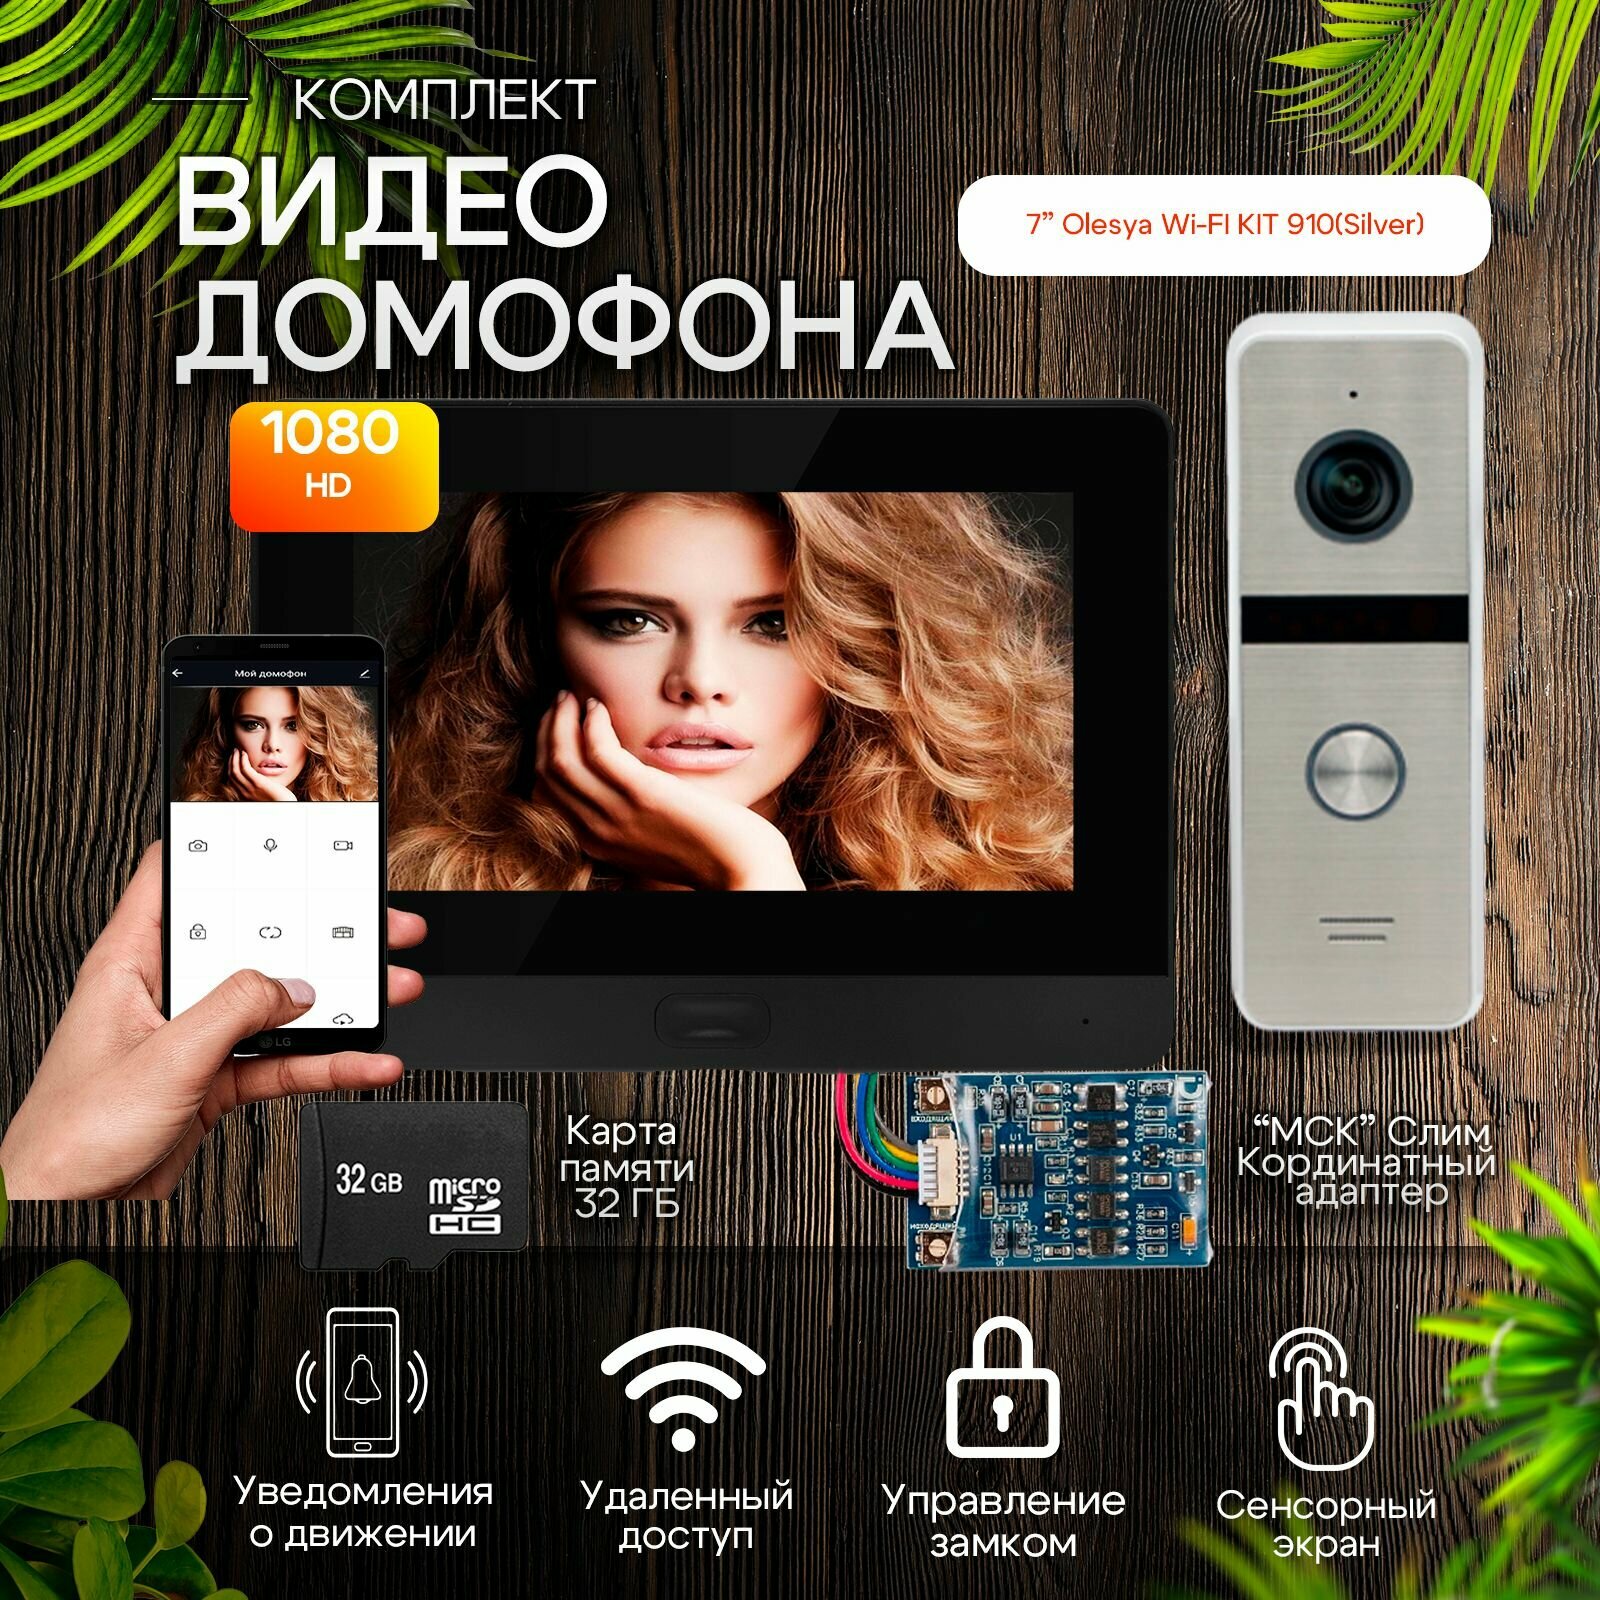 Комплект видеодомофона Olesya Wi-Fi AHD1080P Full HD+вызывная панель (910sl). Экран 7"+модуль сопряжения "МСК-слим" для работы с подъездными домофонами Vizit, Cyfral, Eltis+ карта памяти